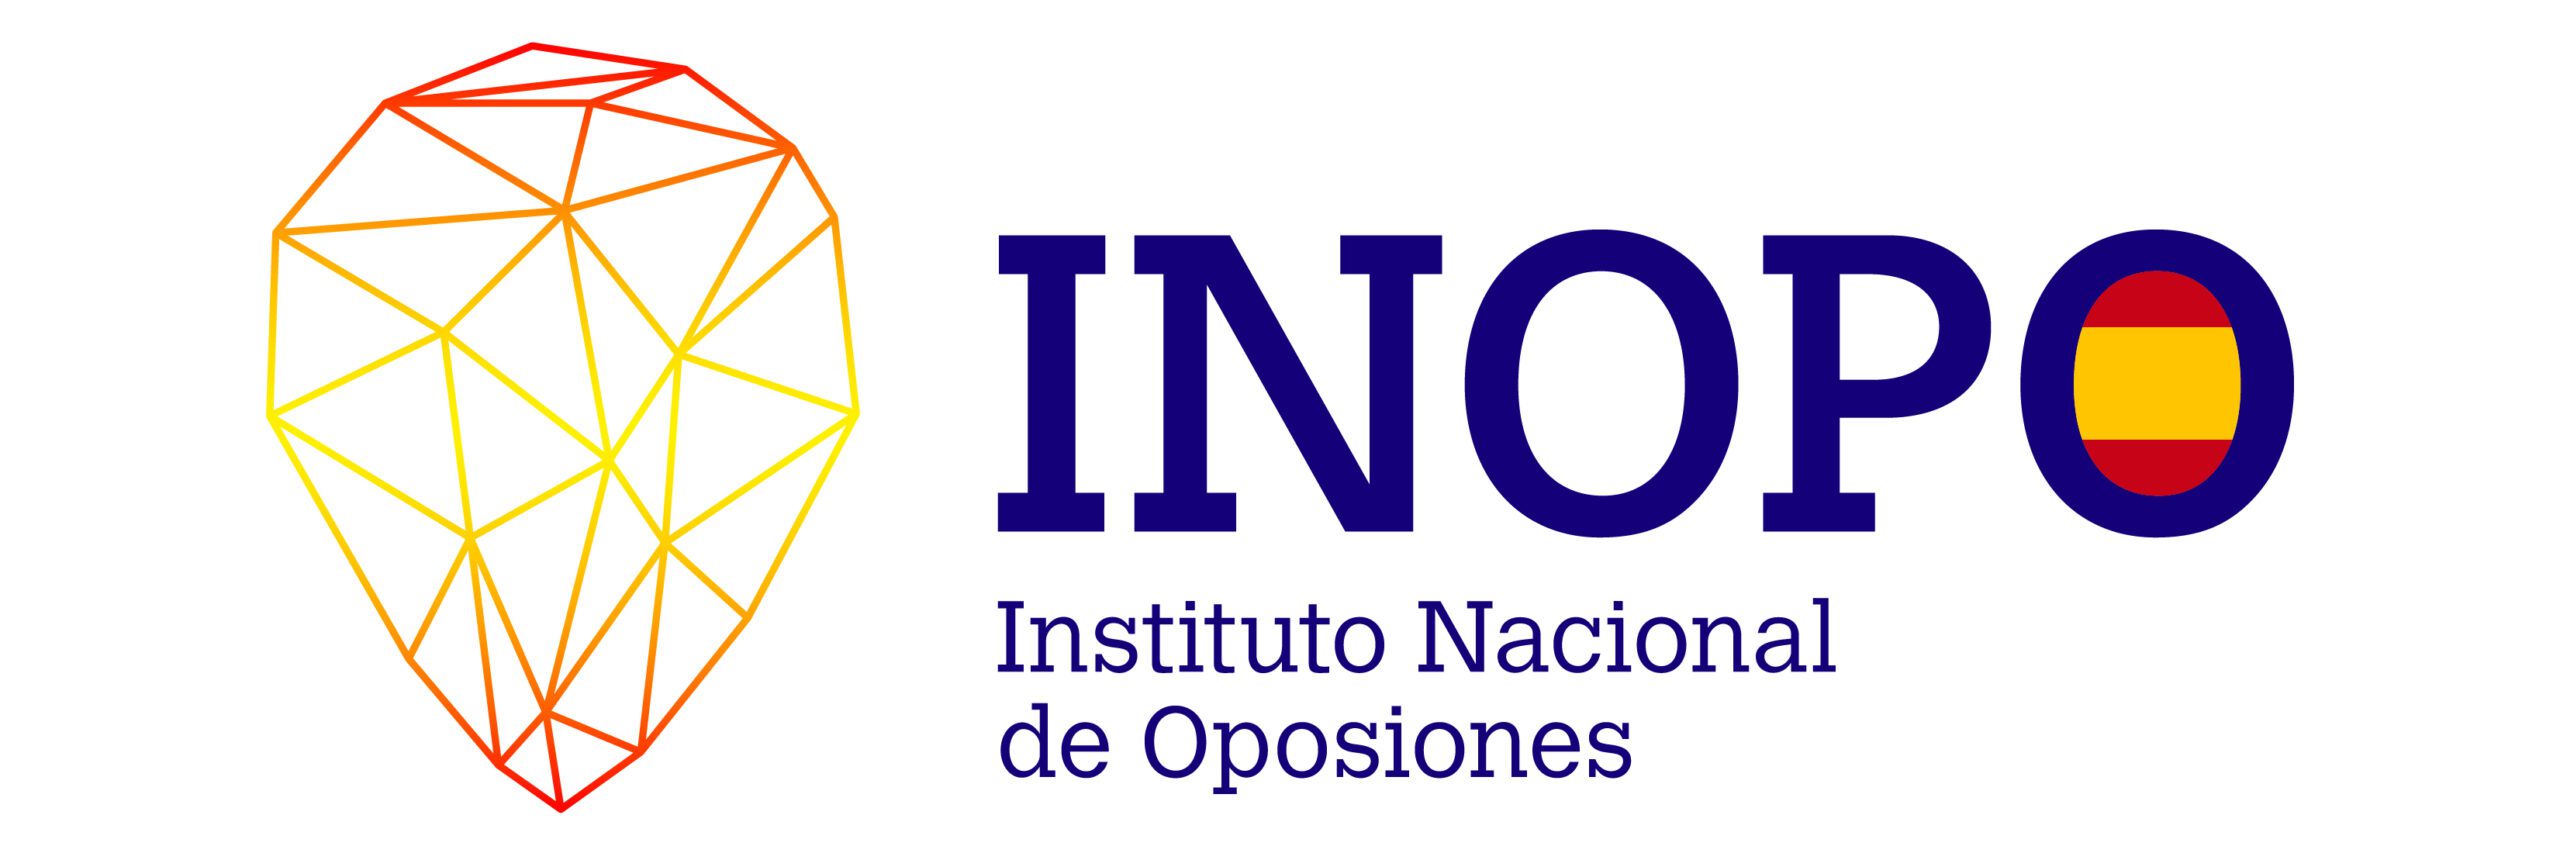 INOPO Logotipo